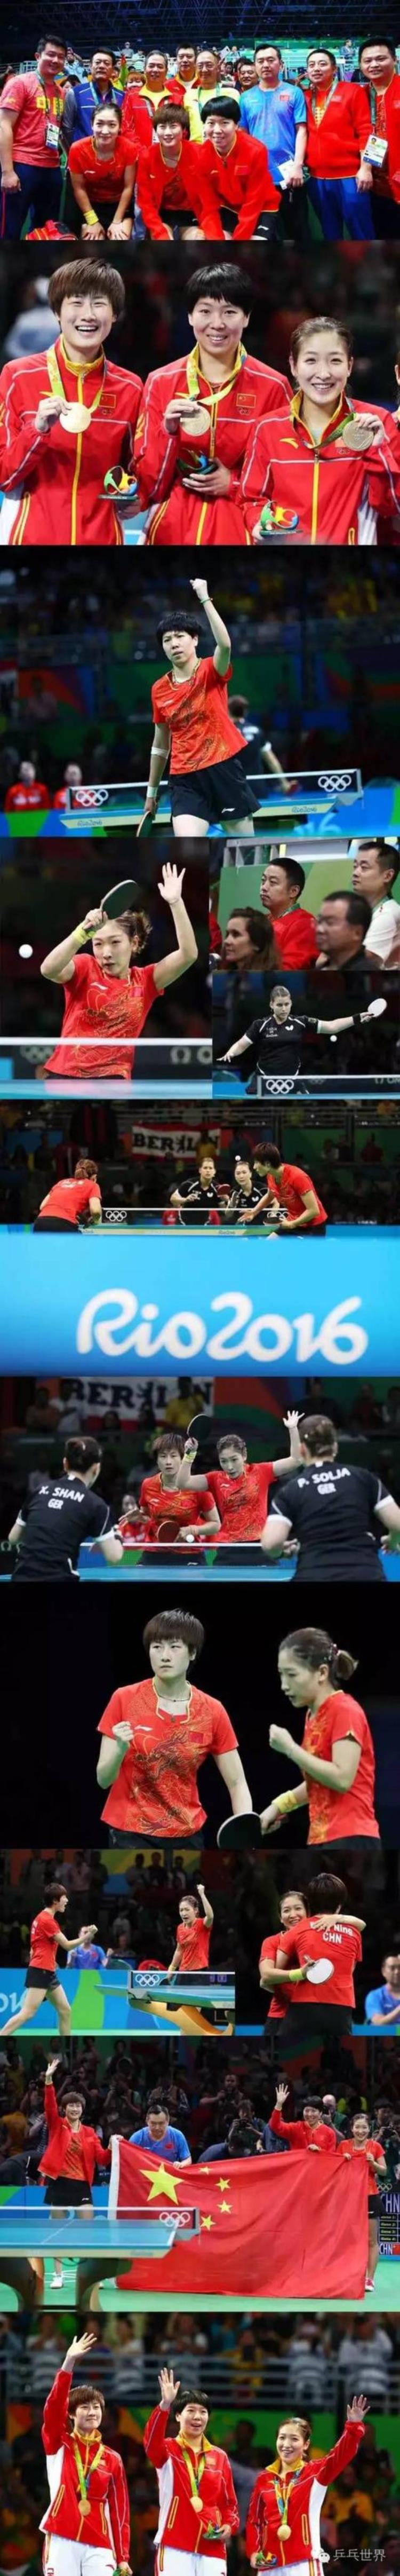 女乒奥运团体三连冠李晓霞确认退出国家队乒乓世界